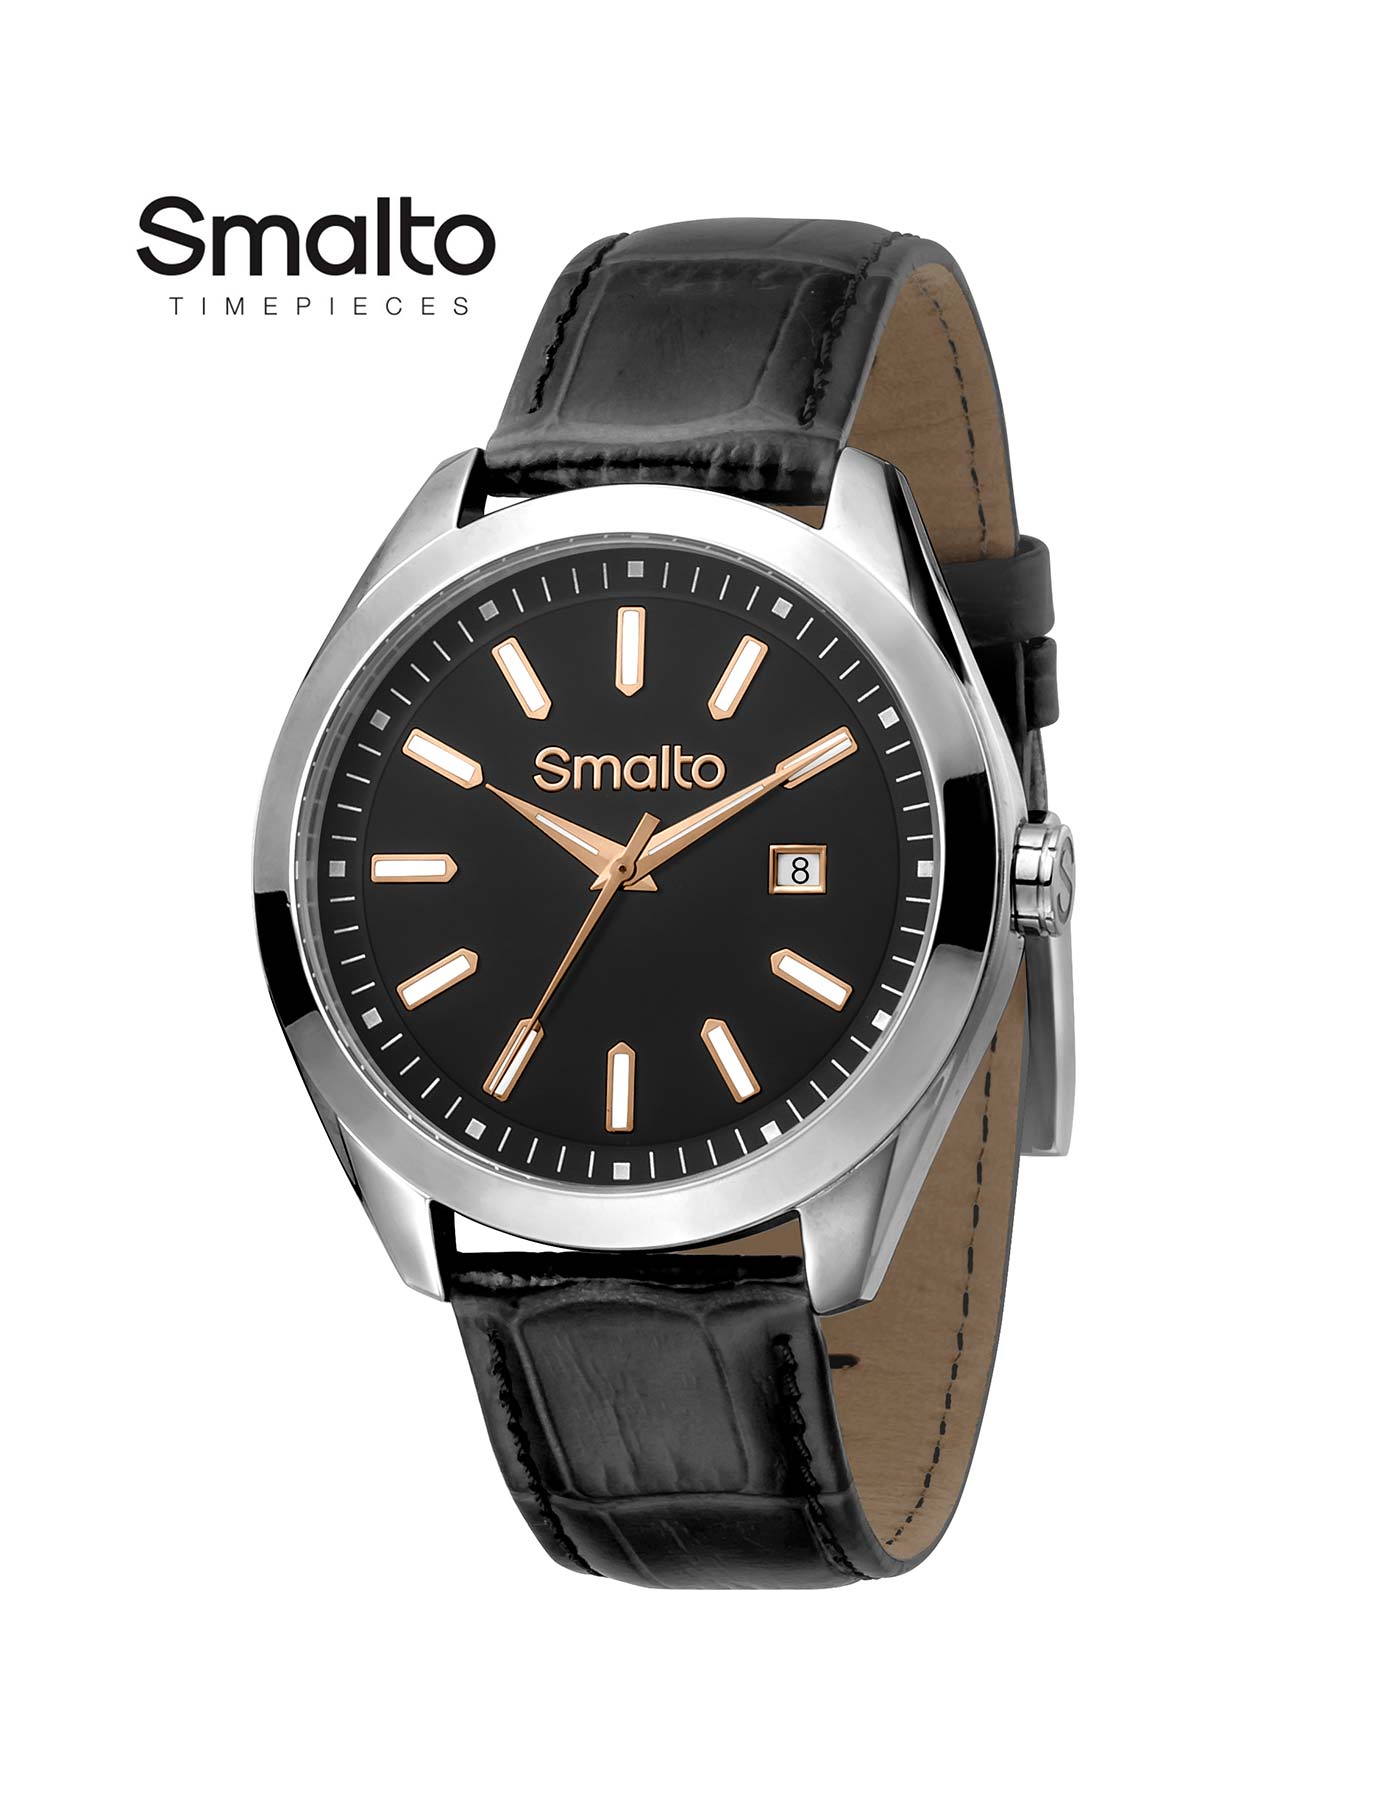 SMALTO Diamonds Swiss Made Quartz Chrono Date Men's Watch Size 45 mm. | eBay